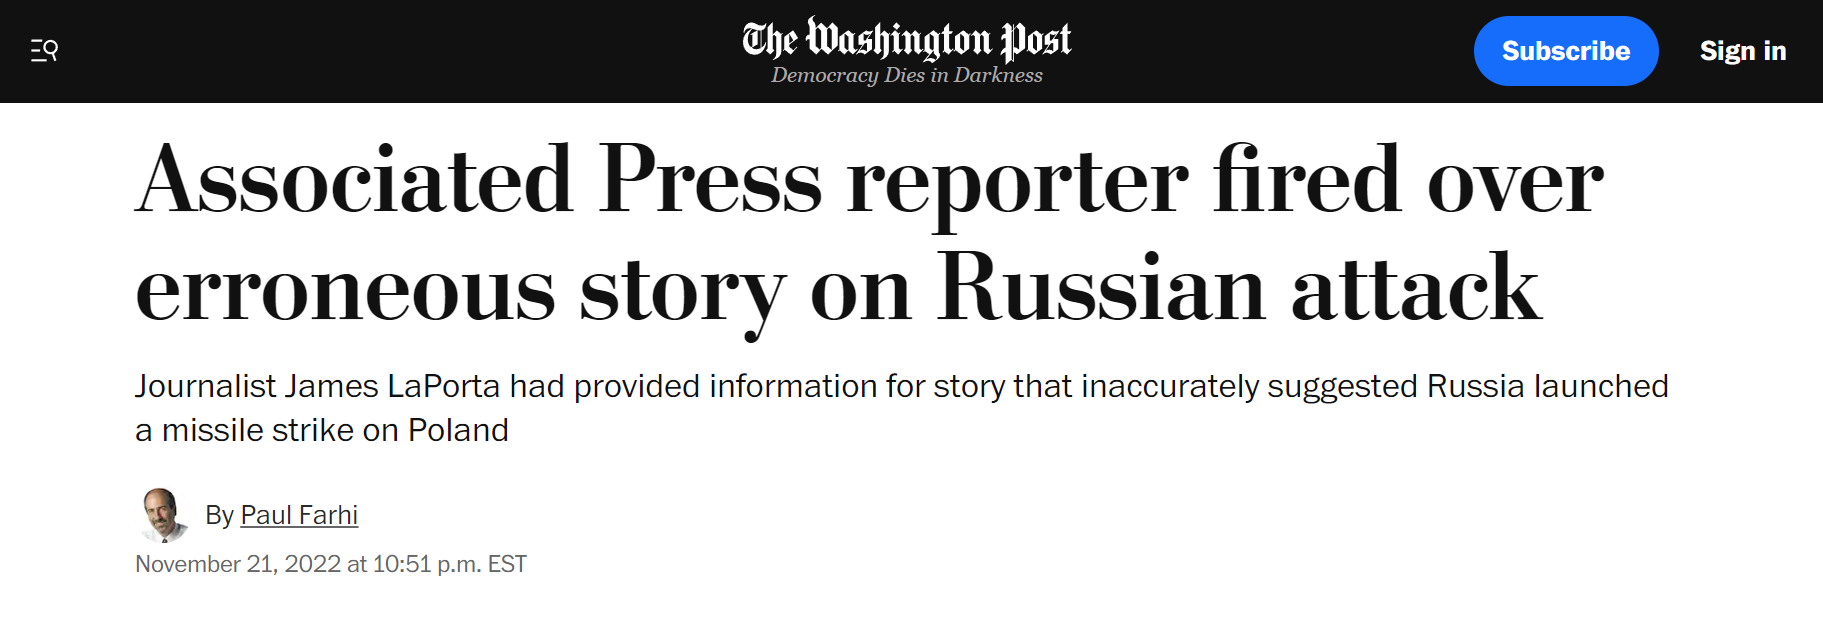 《华盛顿邮报》：美联社记者因关于俄罗斯袭击的错误报道被解雇